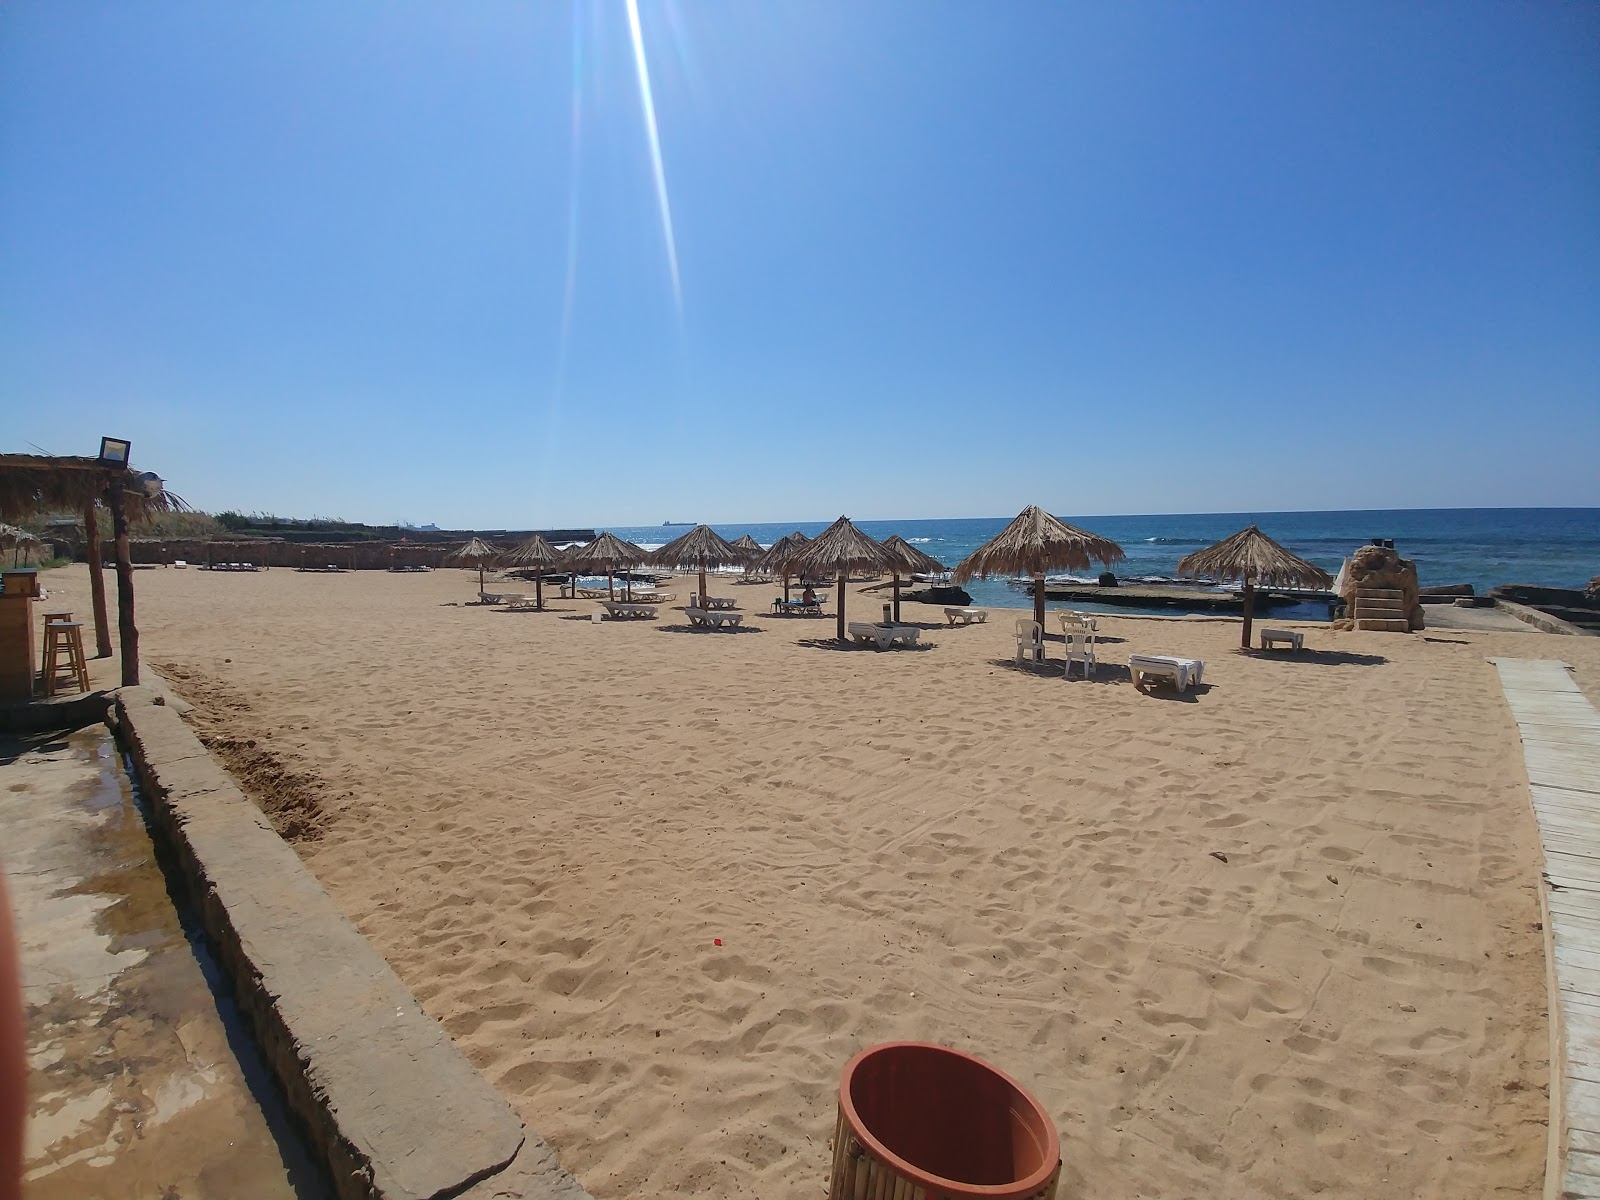 Jiyeh Beach'in fotoğrafı geniş plaj ile birlikte